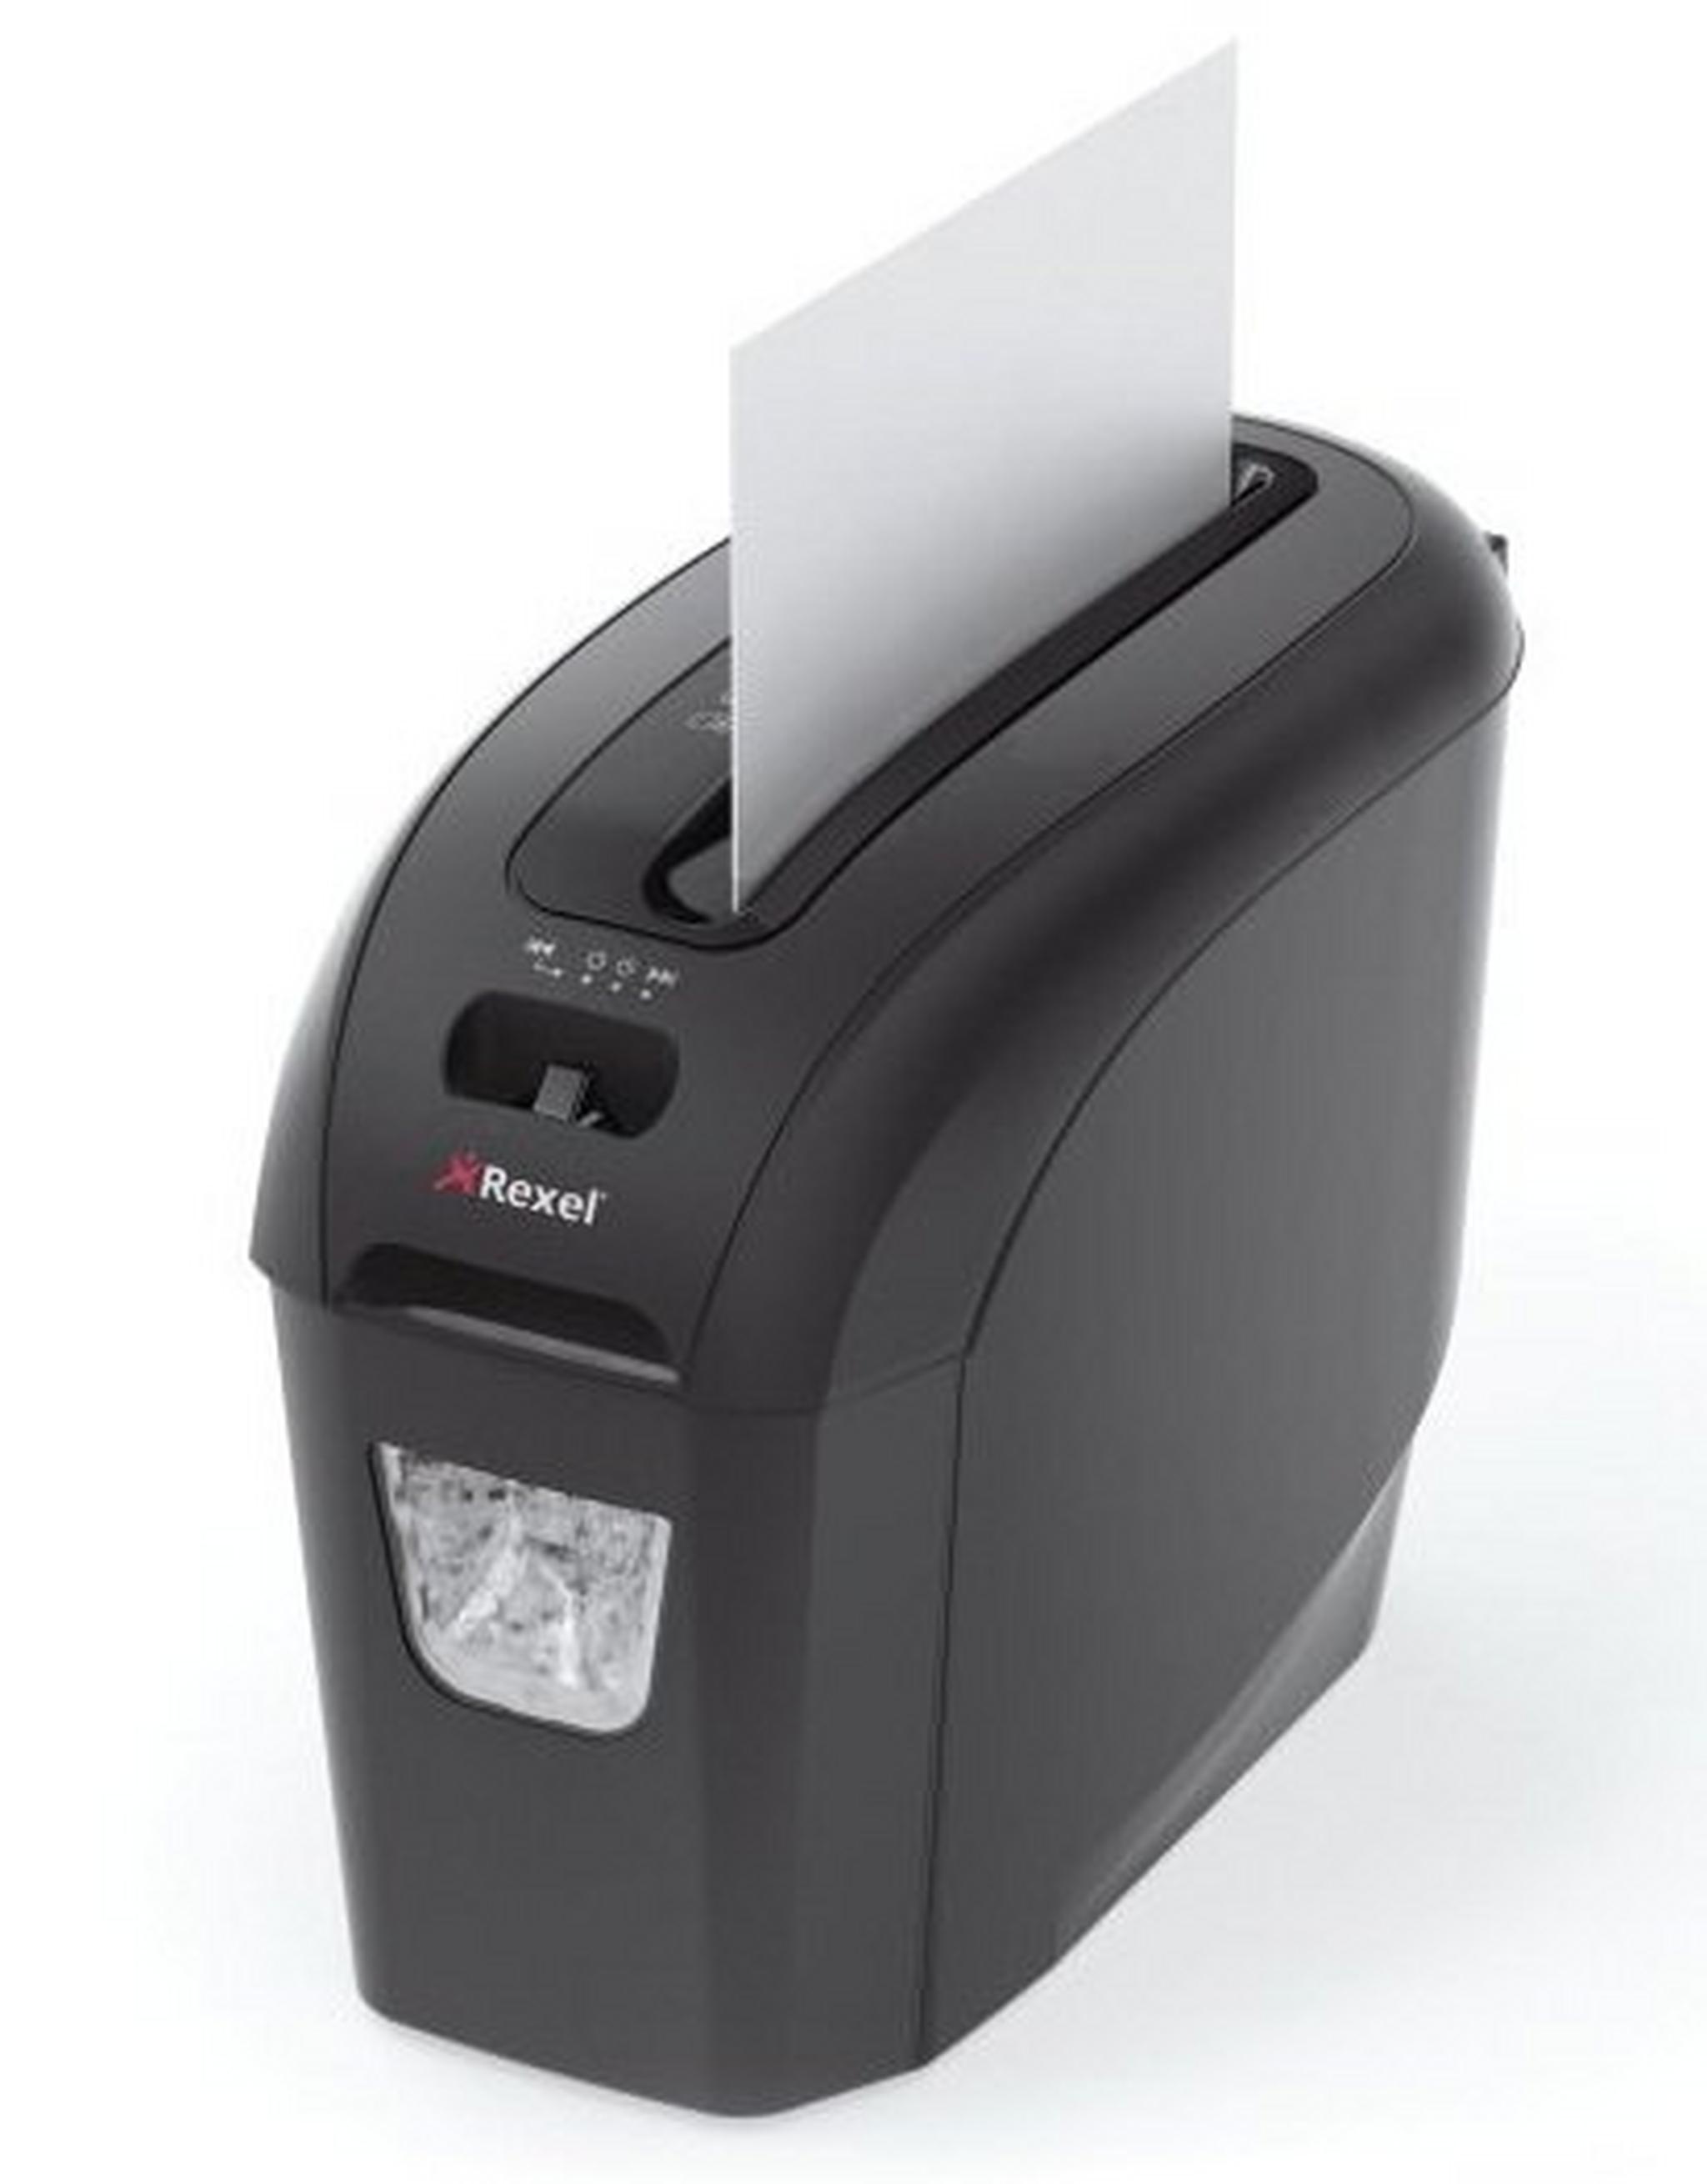 ماكينة تمزيق الورق ريكسيل بروستايل +٥ – 2104005 - أسود